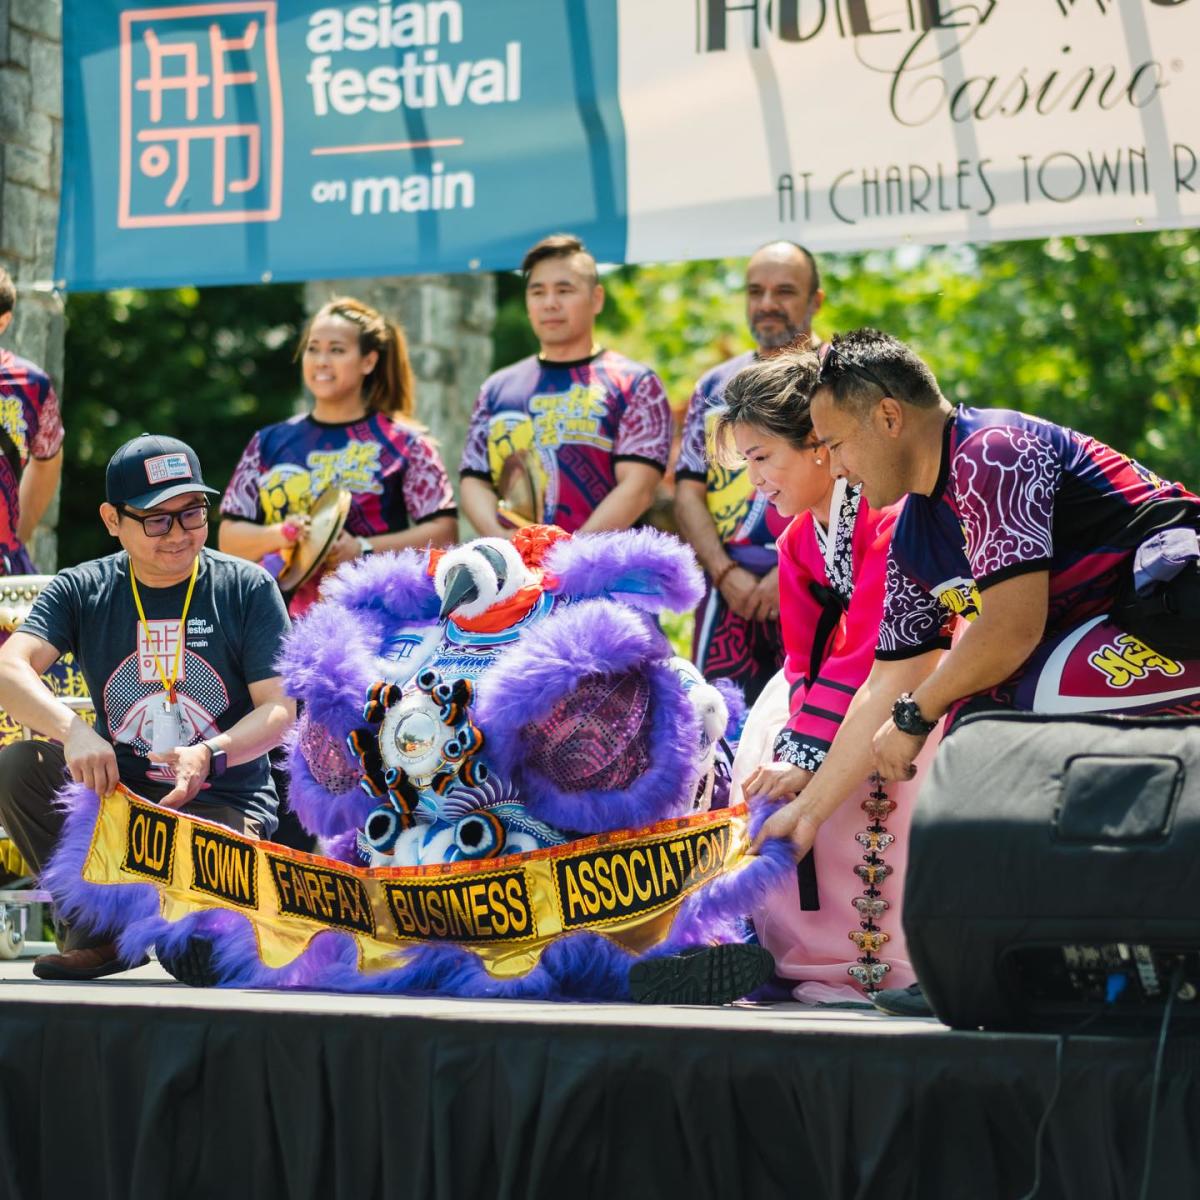 Asian Festival on Main - Fairfax City - Events